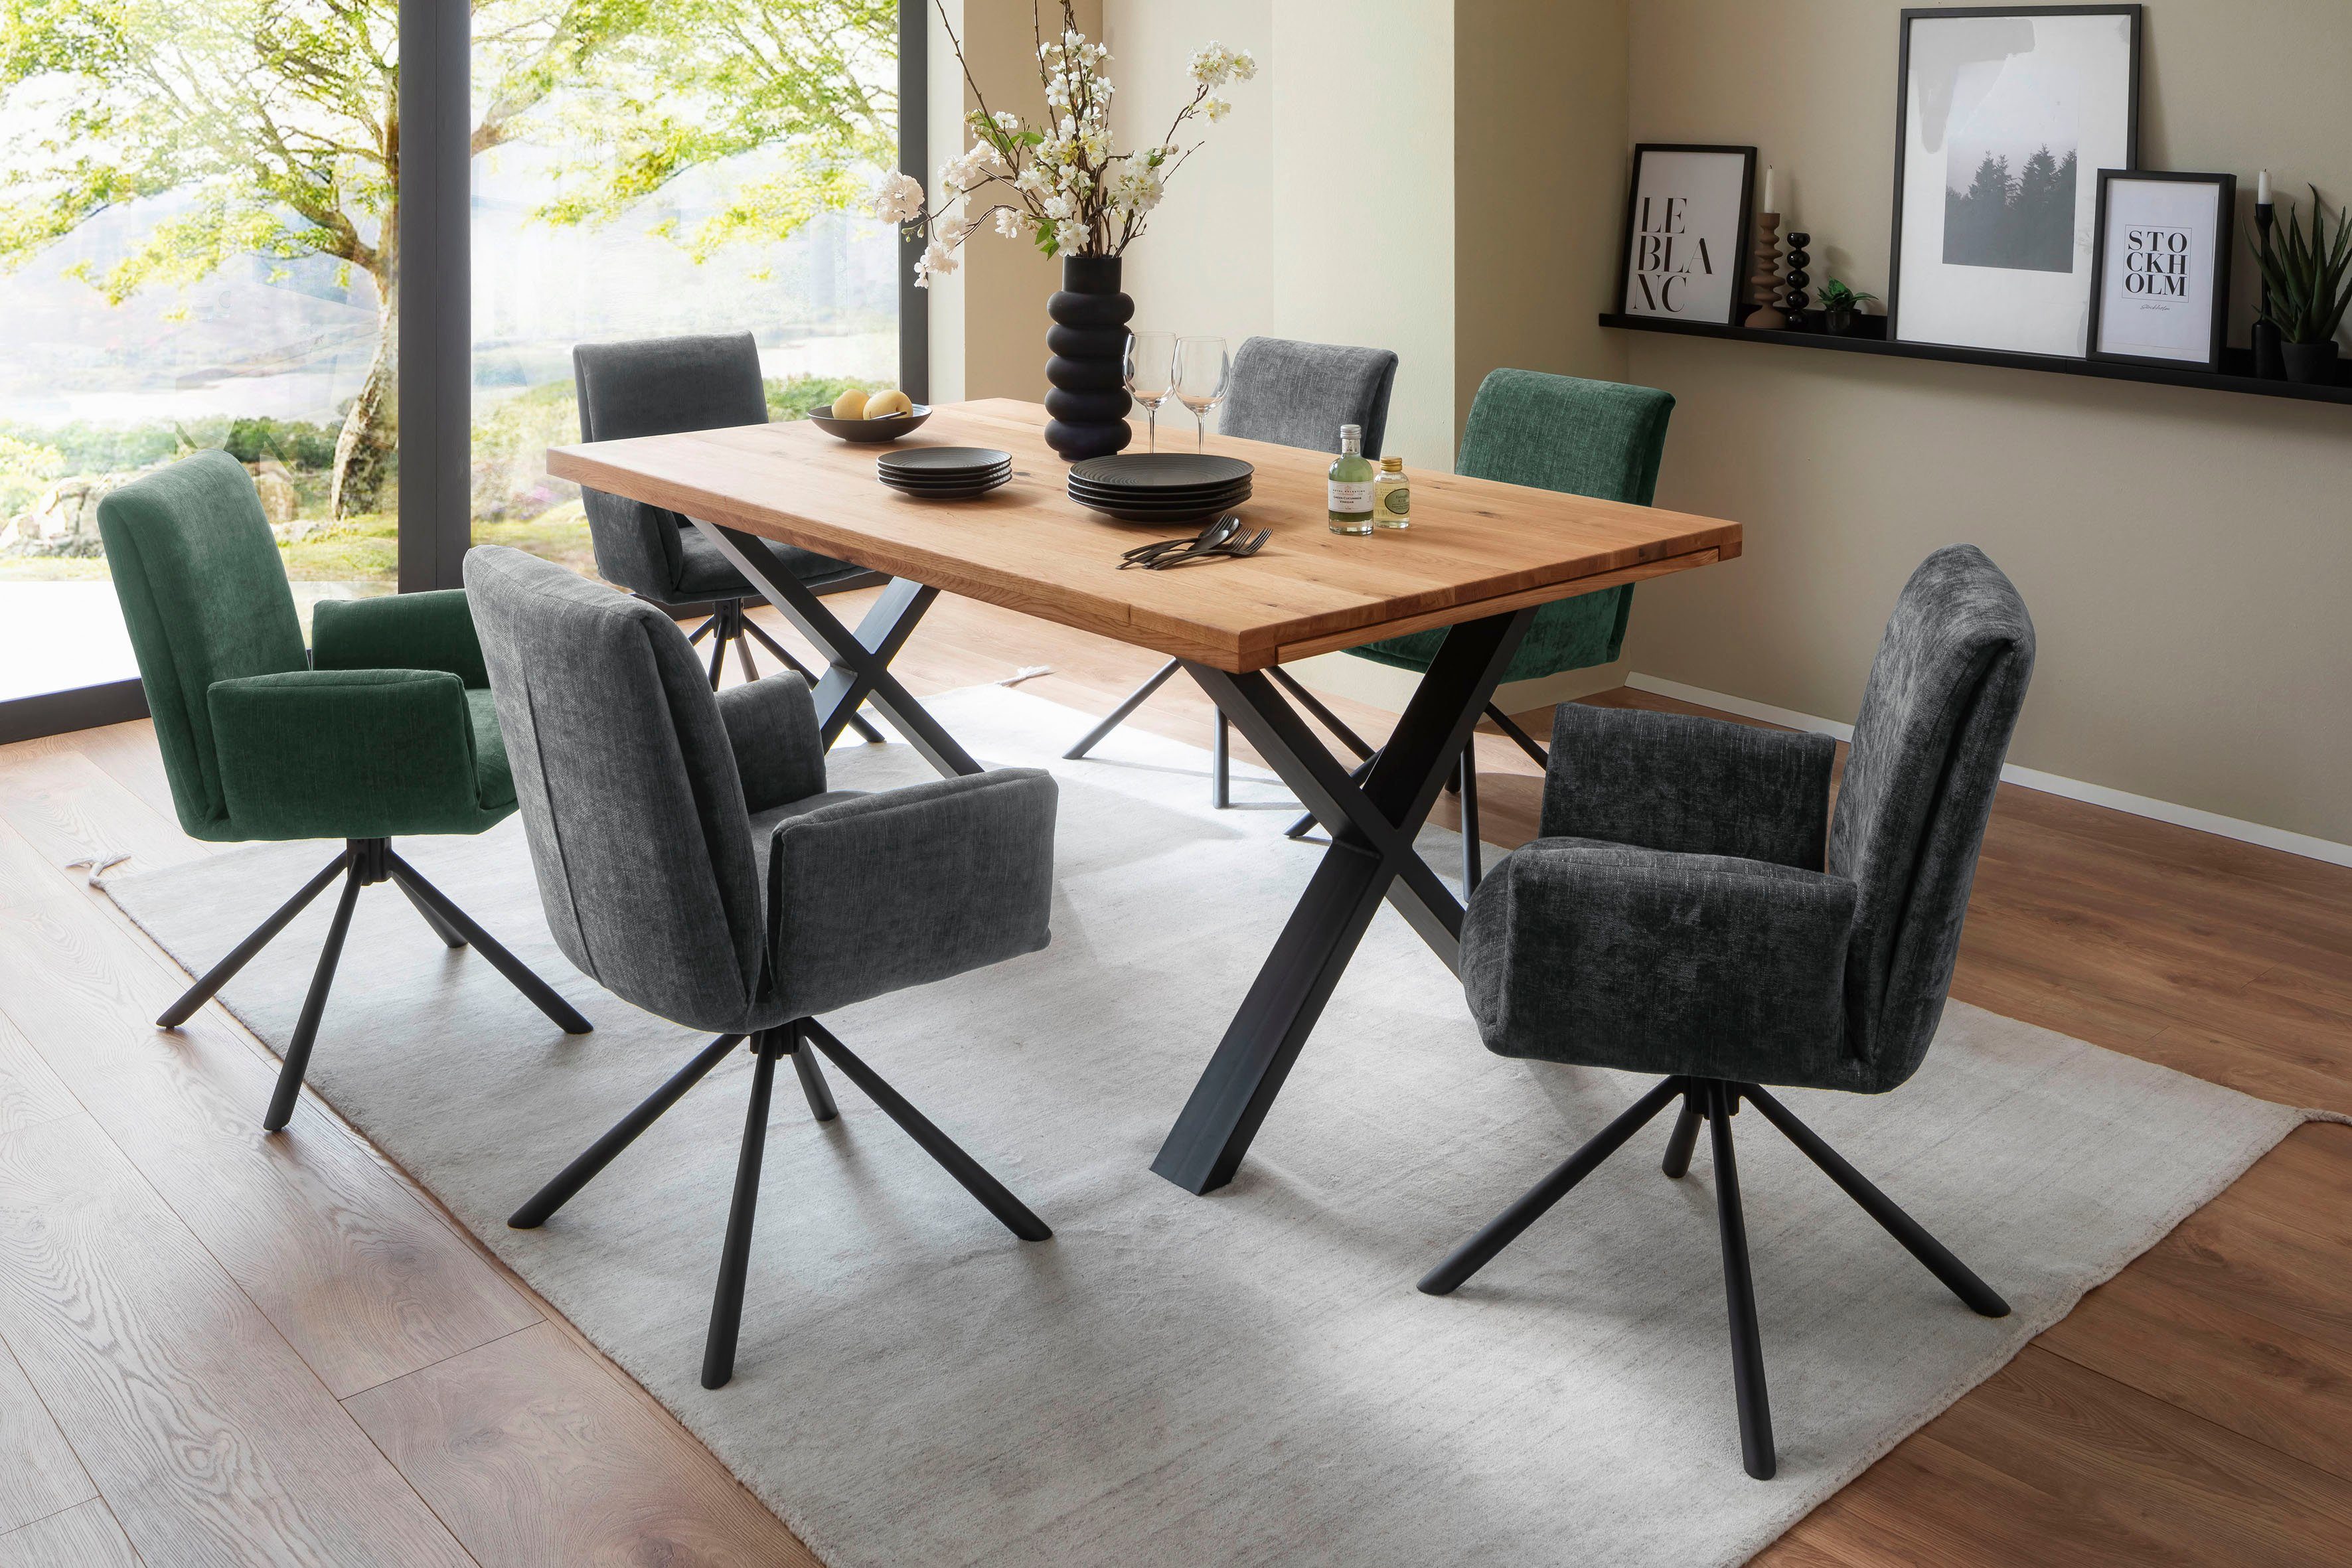 MCA furniture 4-Fußstuhl Nivellierung, lackiert | matt Boulder, in 180°drehbar Chenille Olive Schwarz Optik Stoffbezug mit